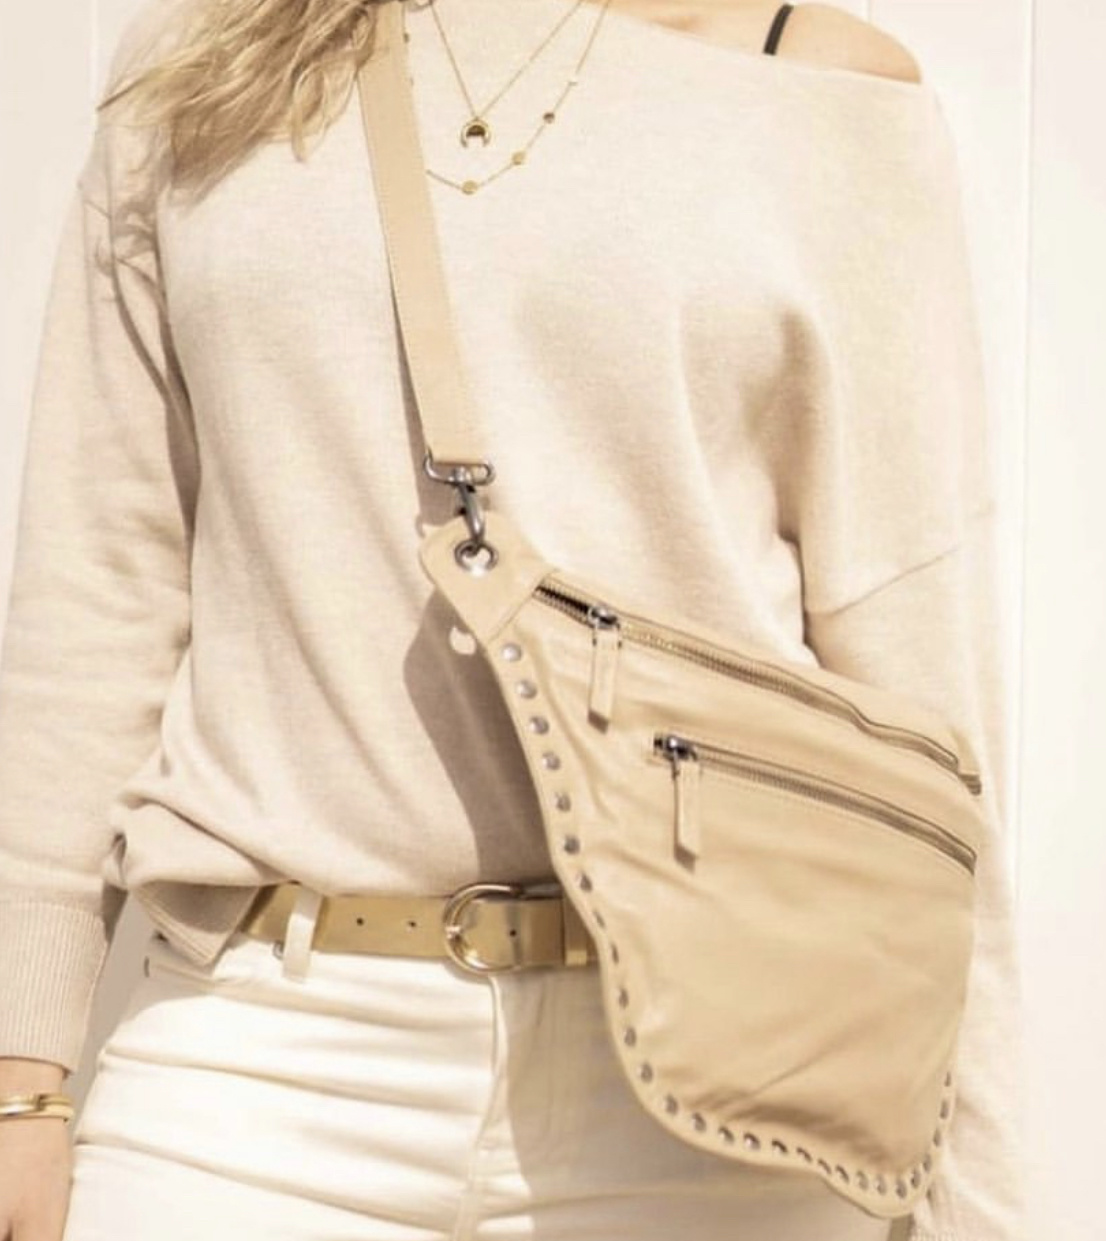 ATAO Elvi 2WAY Leather Shoulder Bag Handbag Brown Color ATAO ELVY Used  Beauty | eBay